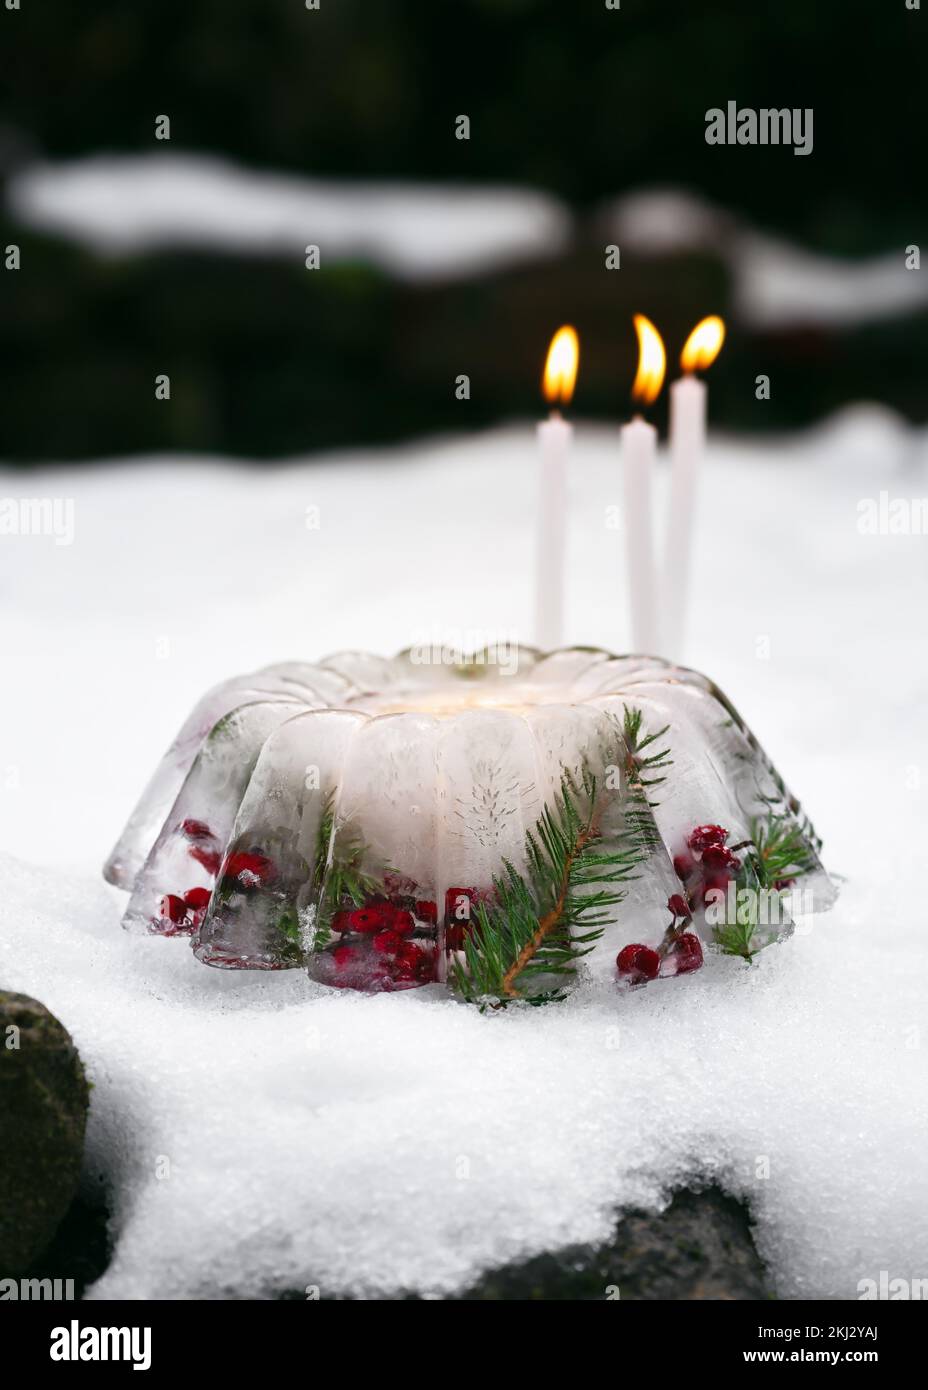 Linterna de Navidad hecha a mano en forma de pastel hecho de hielo, bayas rojas de las caderas, ramas de bayas de acebo y ramas de thuja con velas encendidas en la nieve. Foto de stock